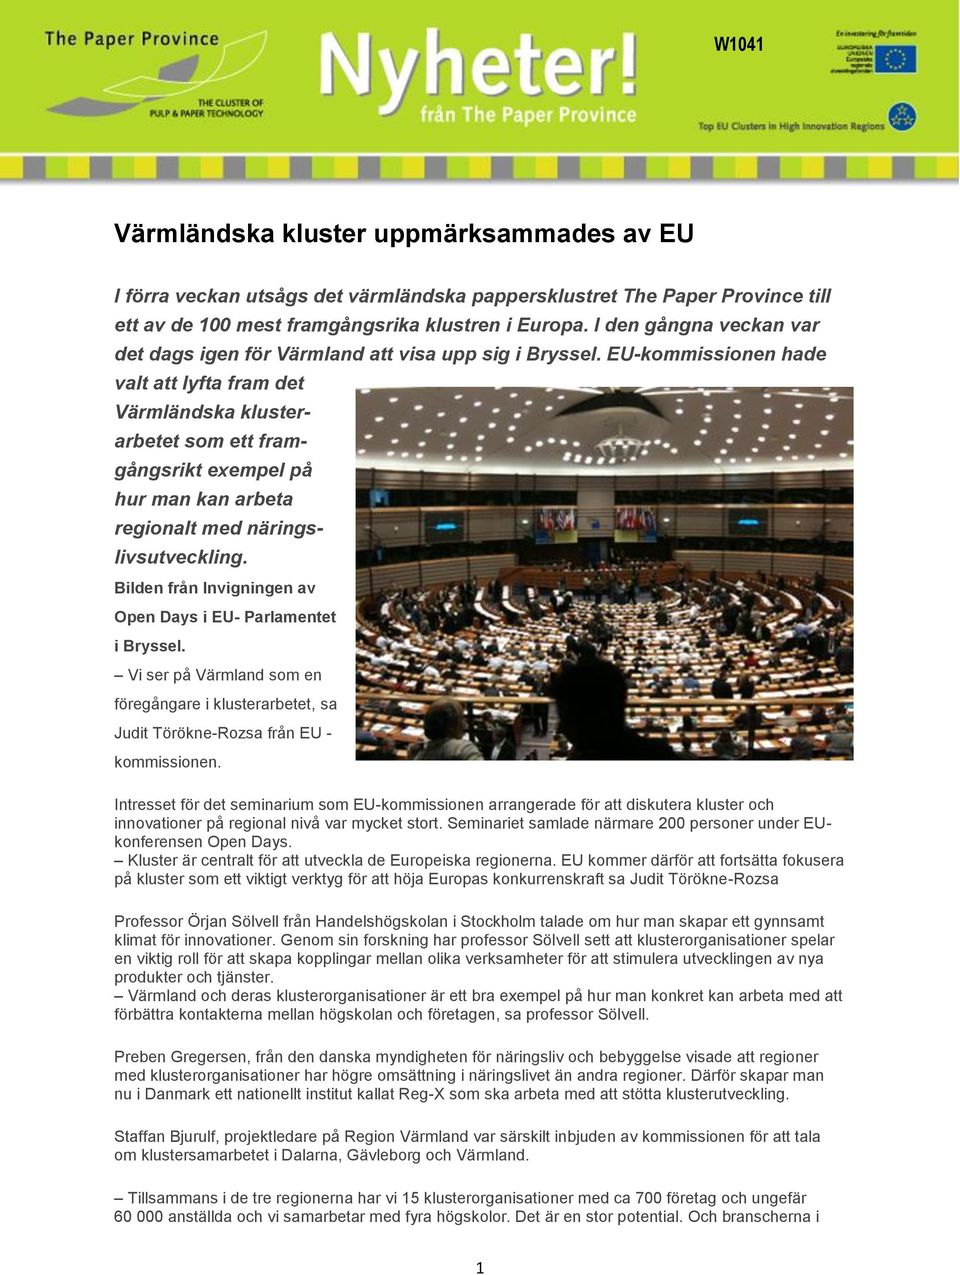 EU-kommissionen hade valt att lyfta fram det Värmländska klusterarbetet som ett framgångsrikt exempel på hur man kan arbeta regionalt med näringslivsutveckling.